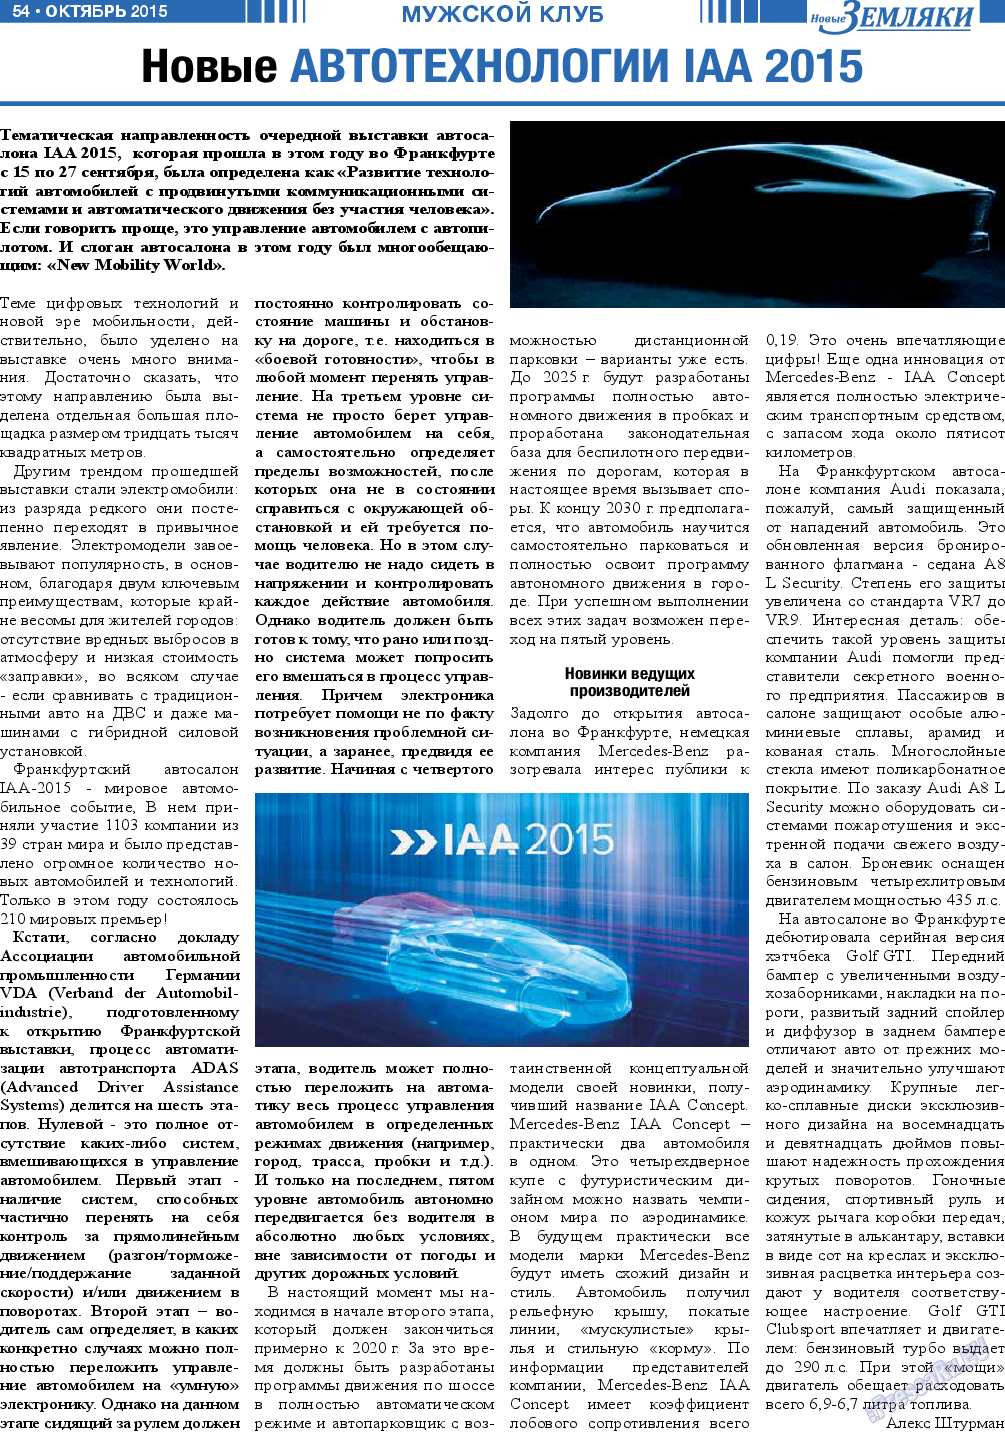 Новые Земляки, газета. 2015 №10 стр.54